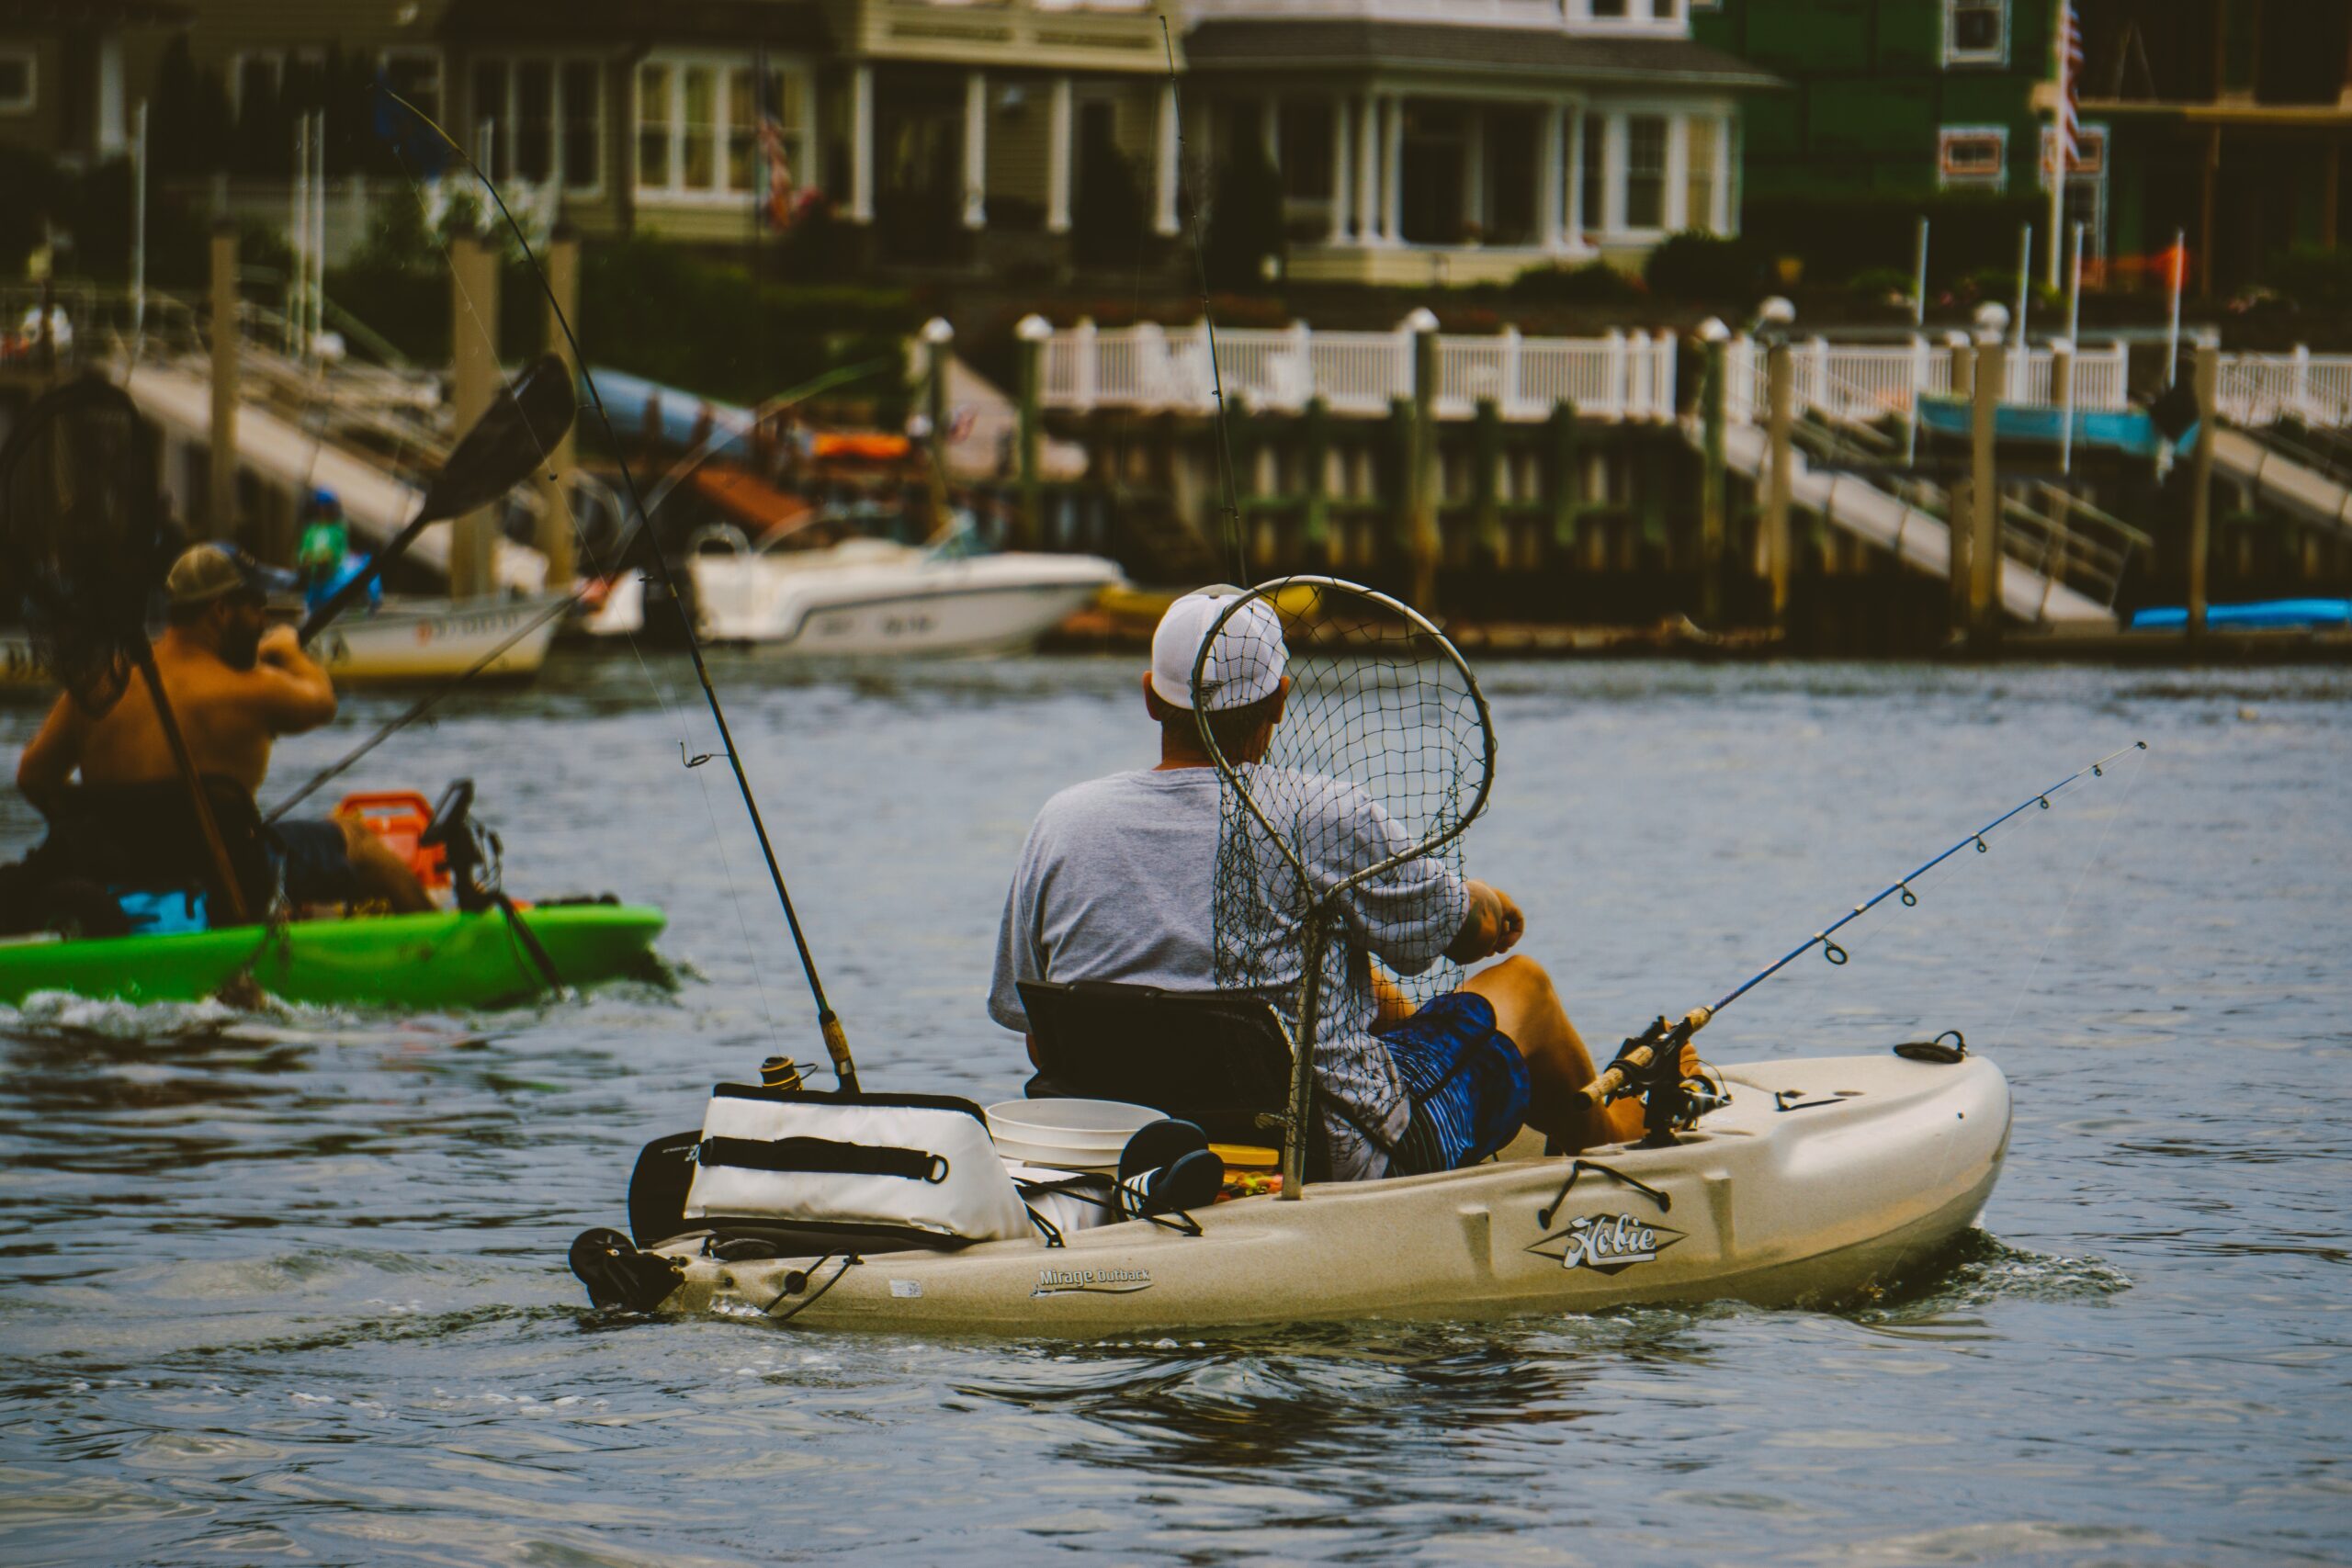 Os melhores kayaks de pesca